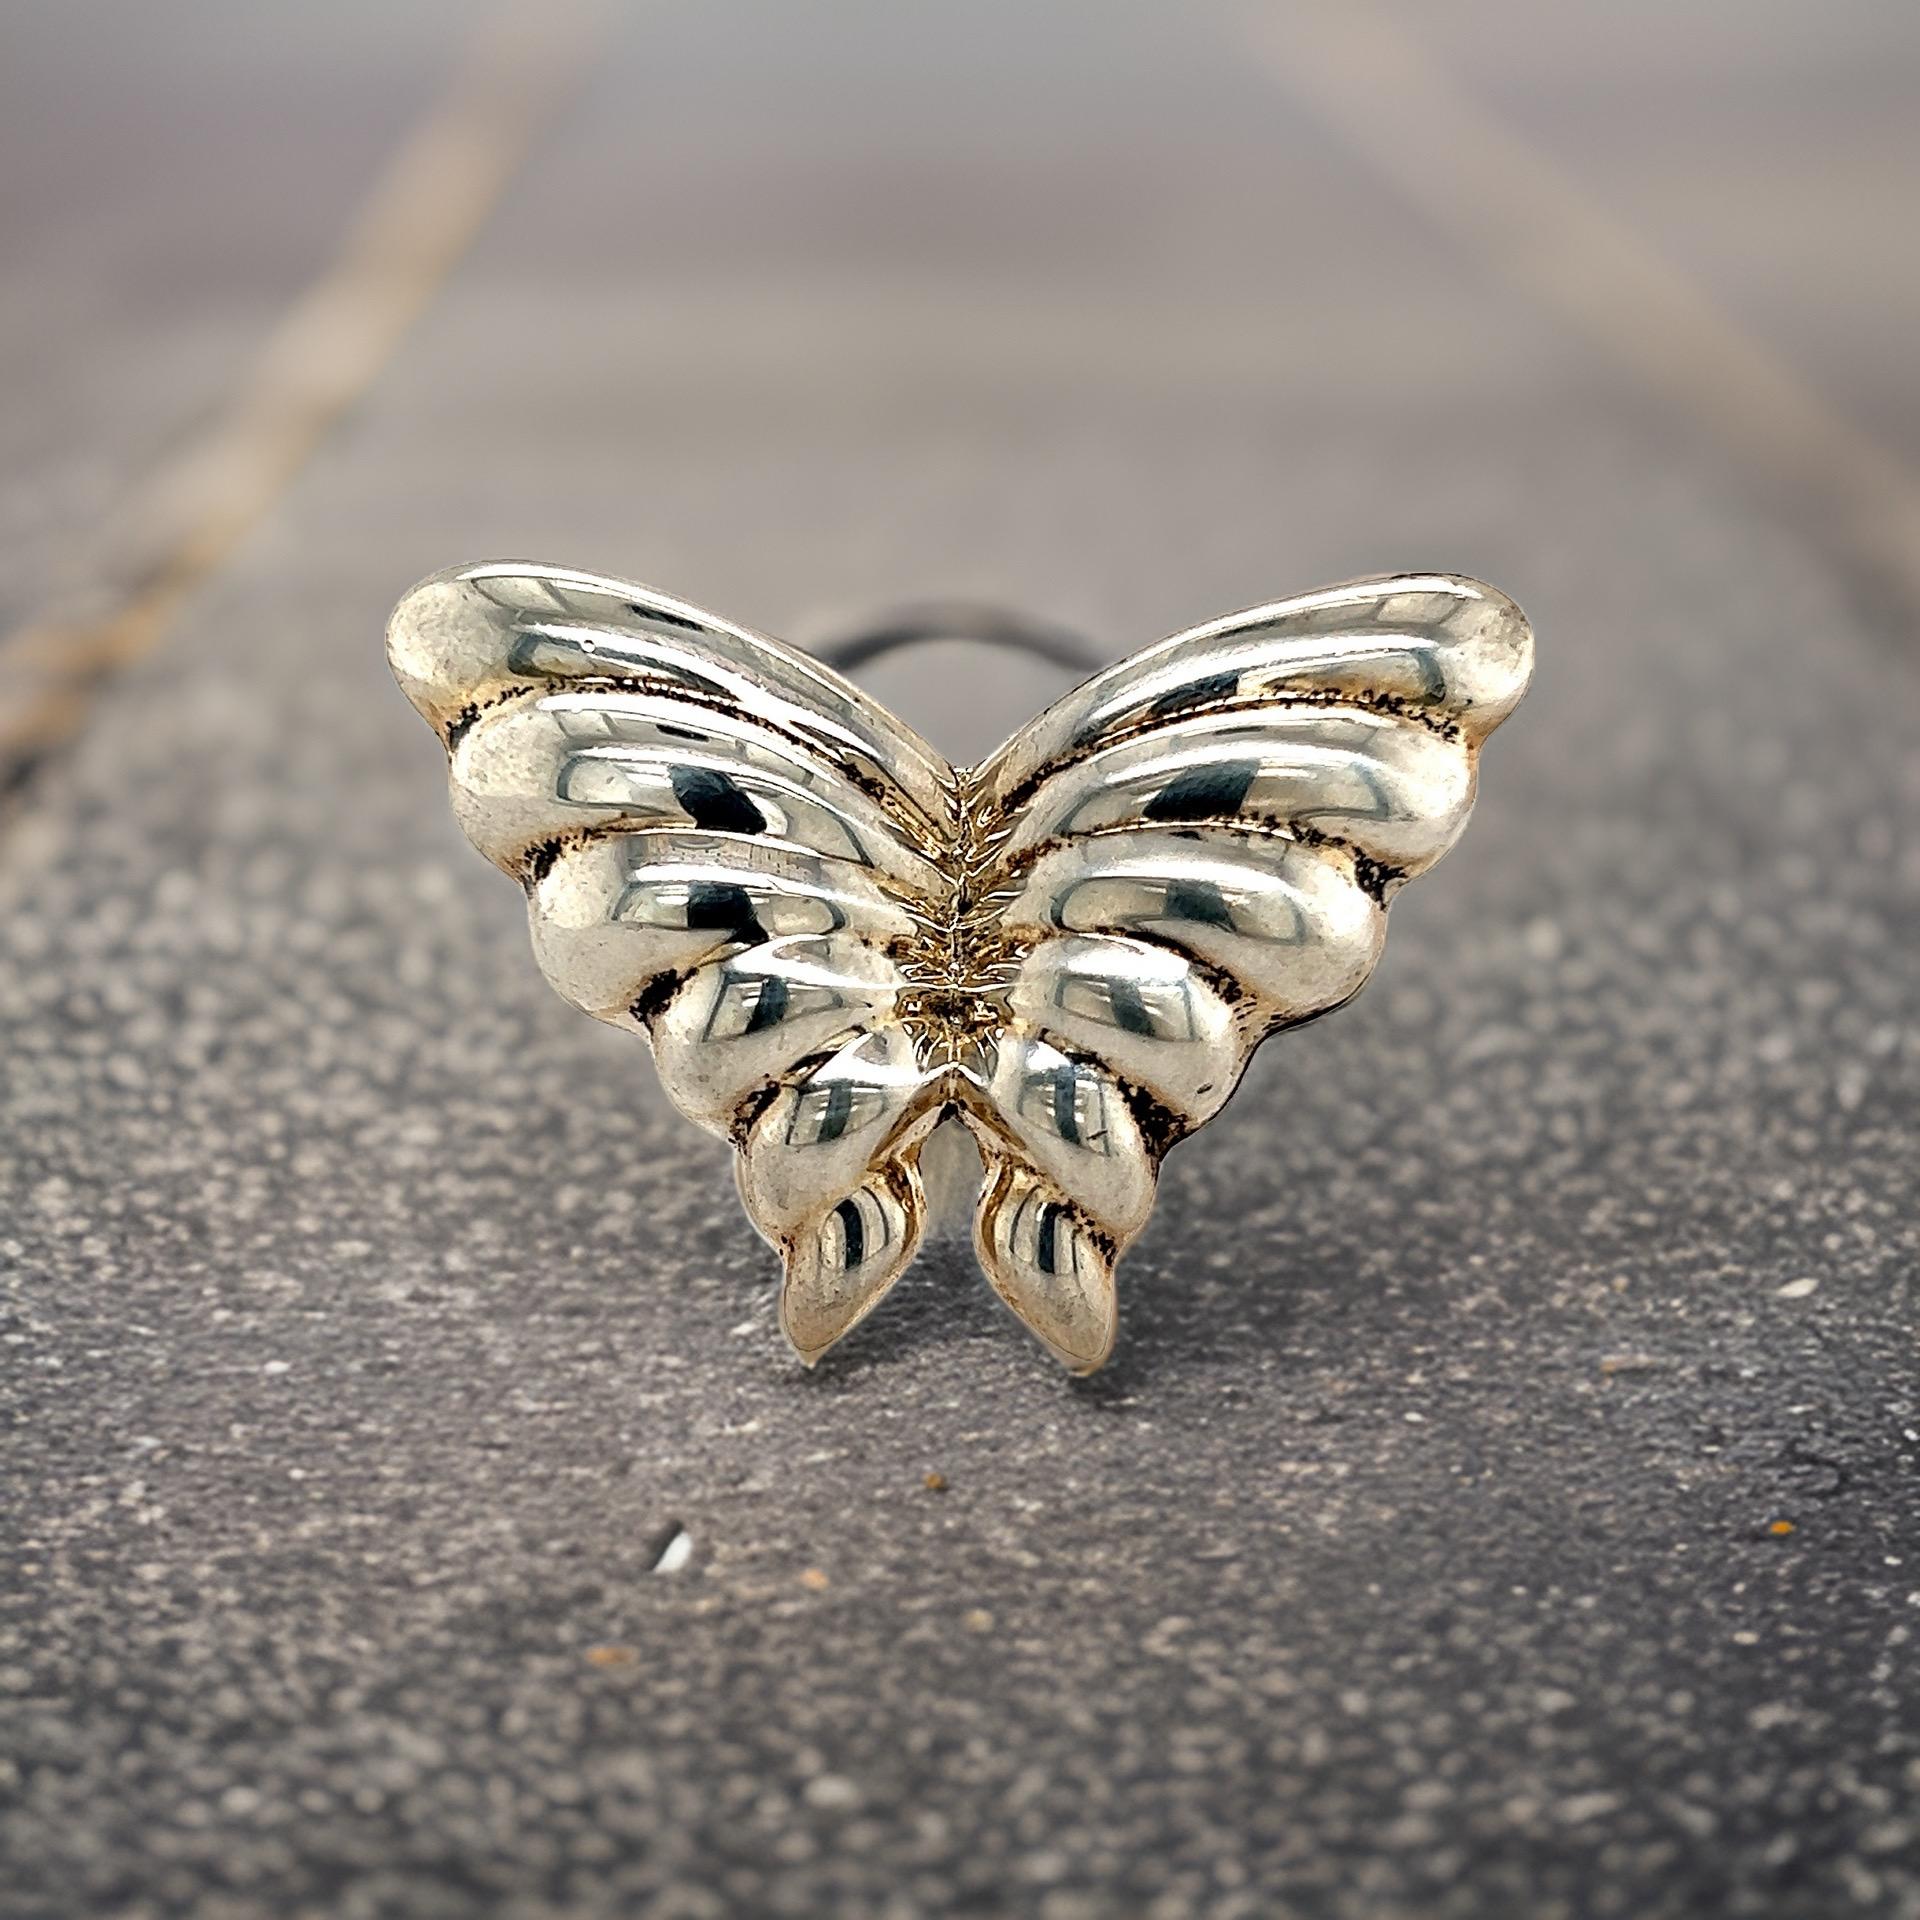 Authentic Tiffany & Co Estate Puffed Butterfly Brooch Pin Sterling Silver TIF516

VENDEUR DE CONFIANCE DEPUIS 2002

VEUILLEZ VOIR NOS CENTAINES DE COMMENTAIRES POSITIFS DE NOS CLIENTS !

LIVRAISON GRATUITE !

DÉTAILS
Style : Broche papillon
Poids :